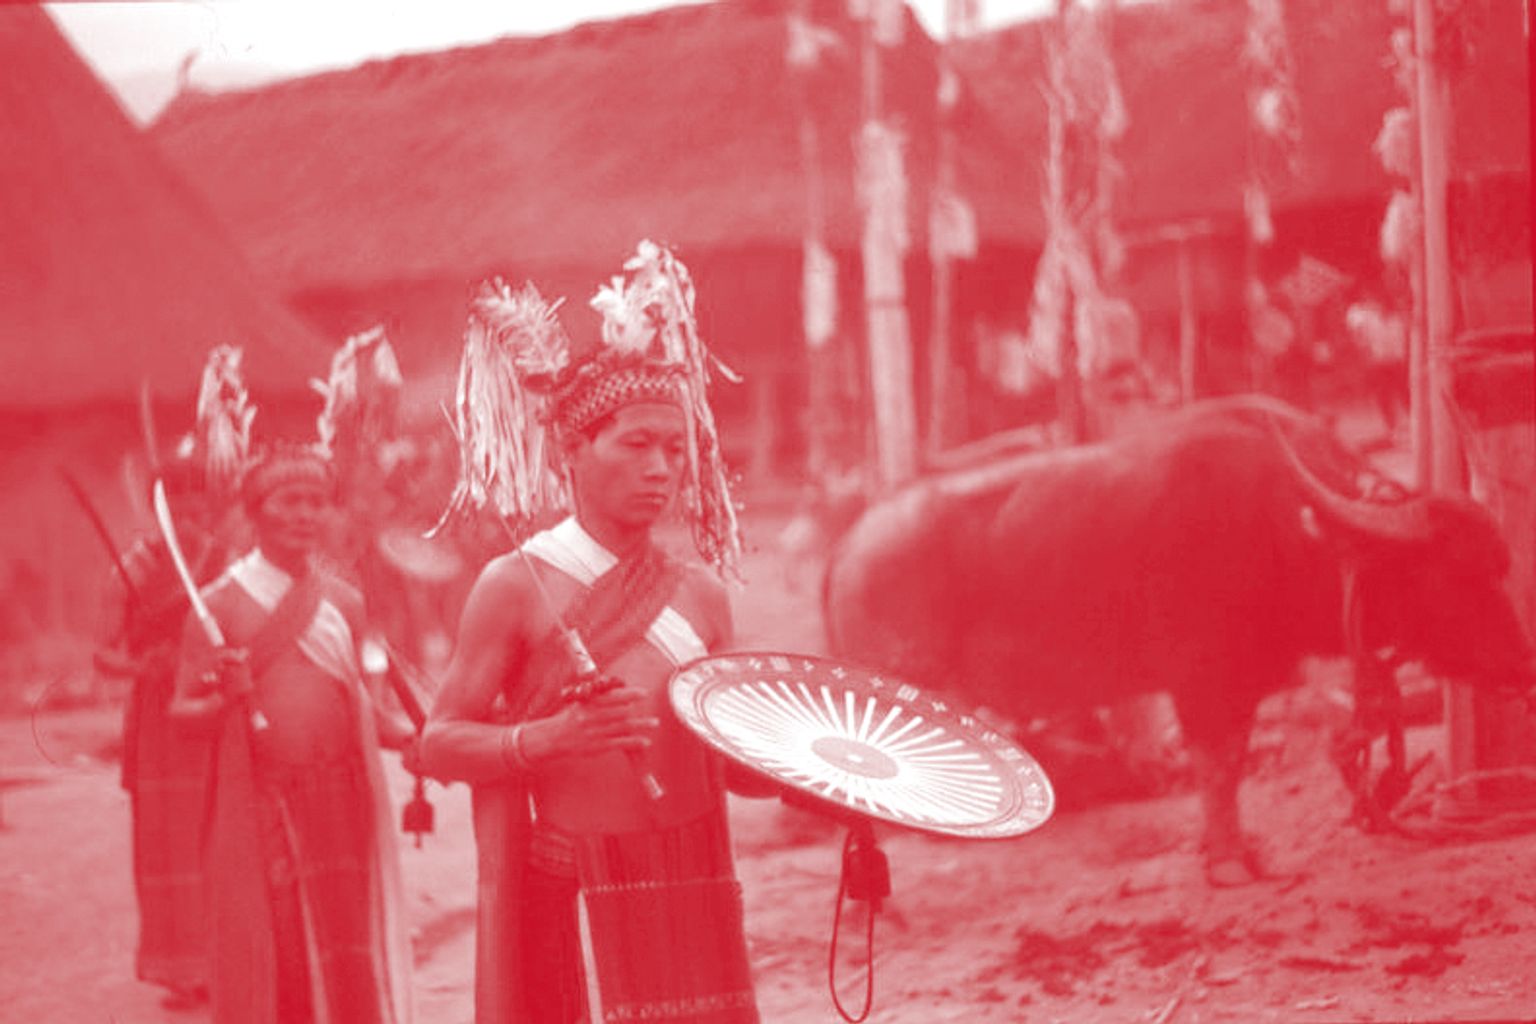 Rituel sacrificiel ethnographié par Yves Goudineau (cliché) sur les hauts plateaux du Laos en 1998.